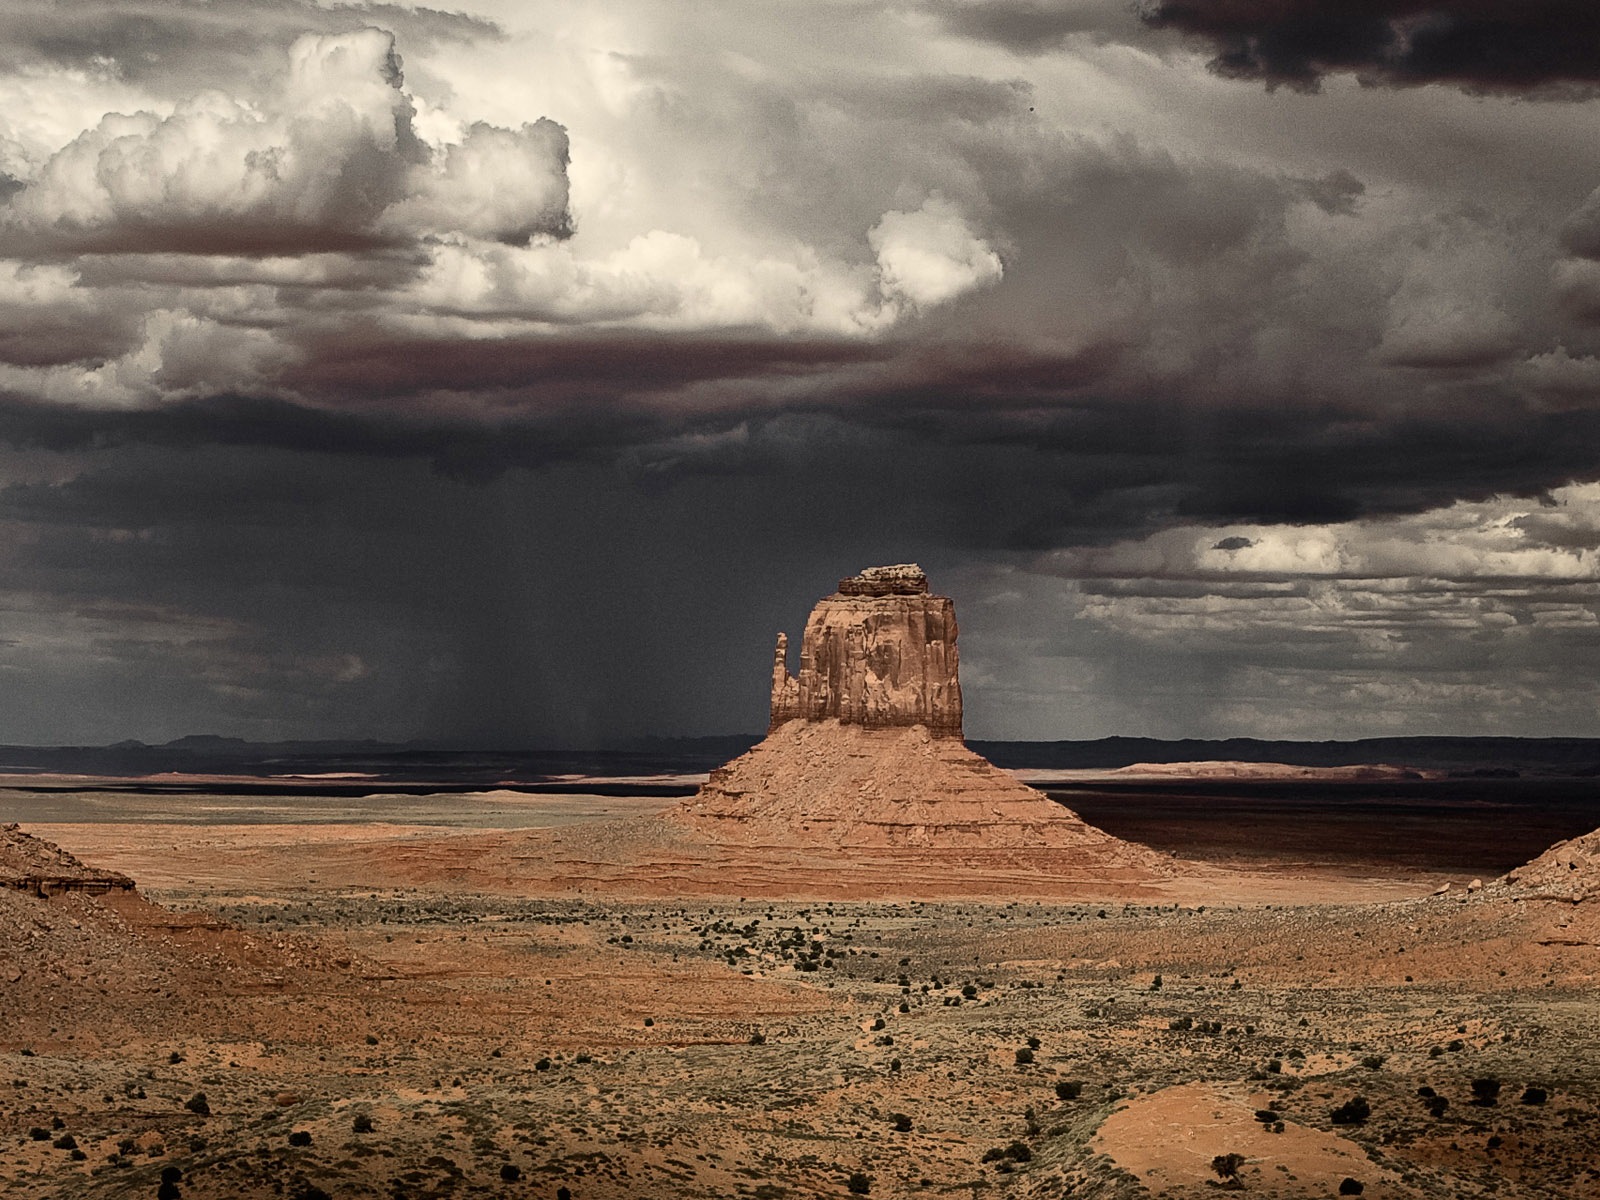 Les déserts chauds et arides, de Windows 8 fonds d'écran widescreen panoramique #7 - 1600x1200